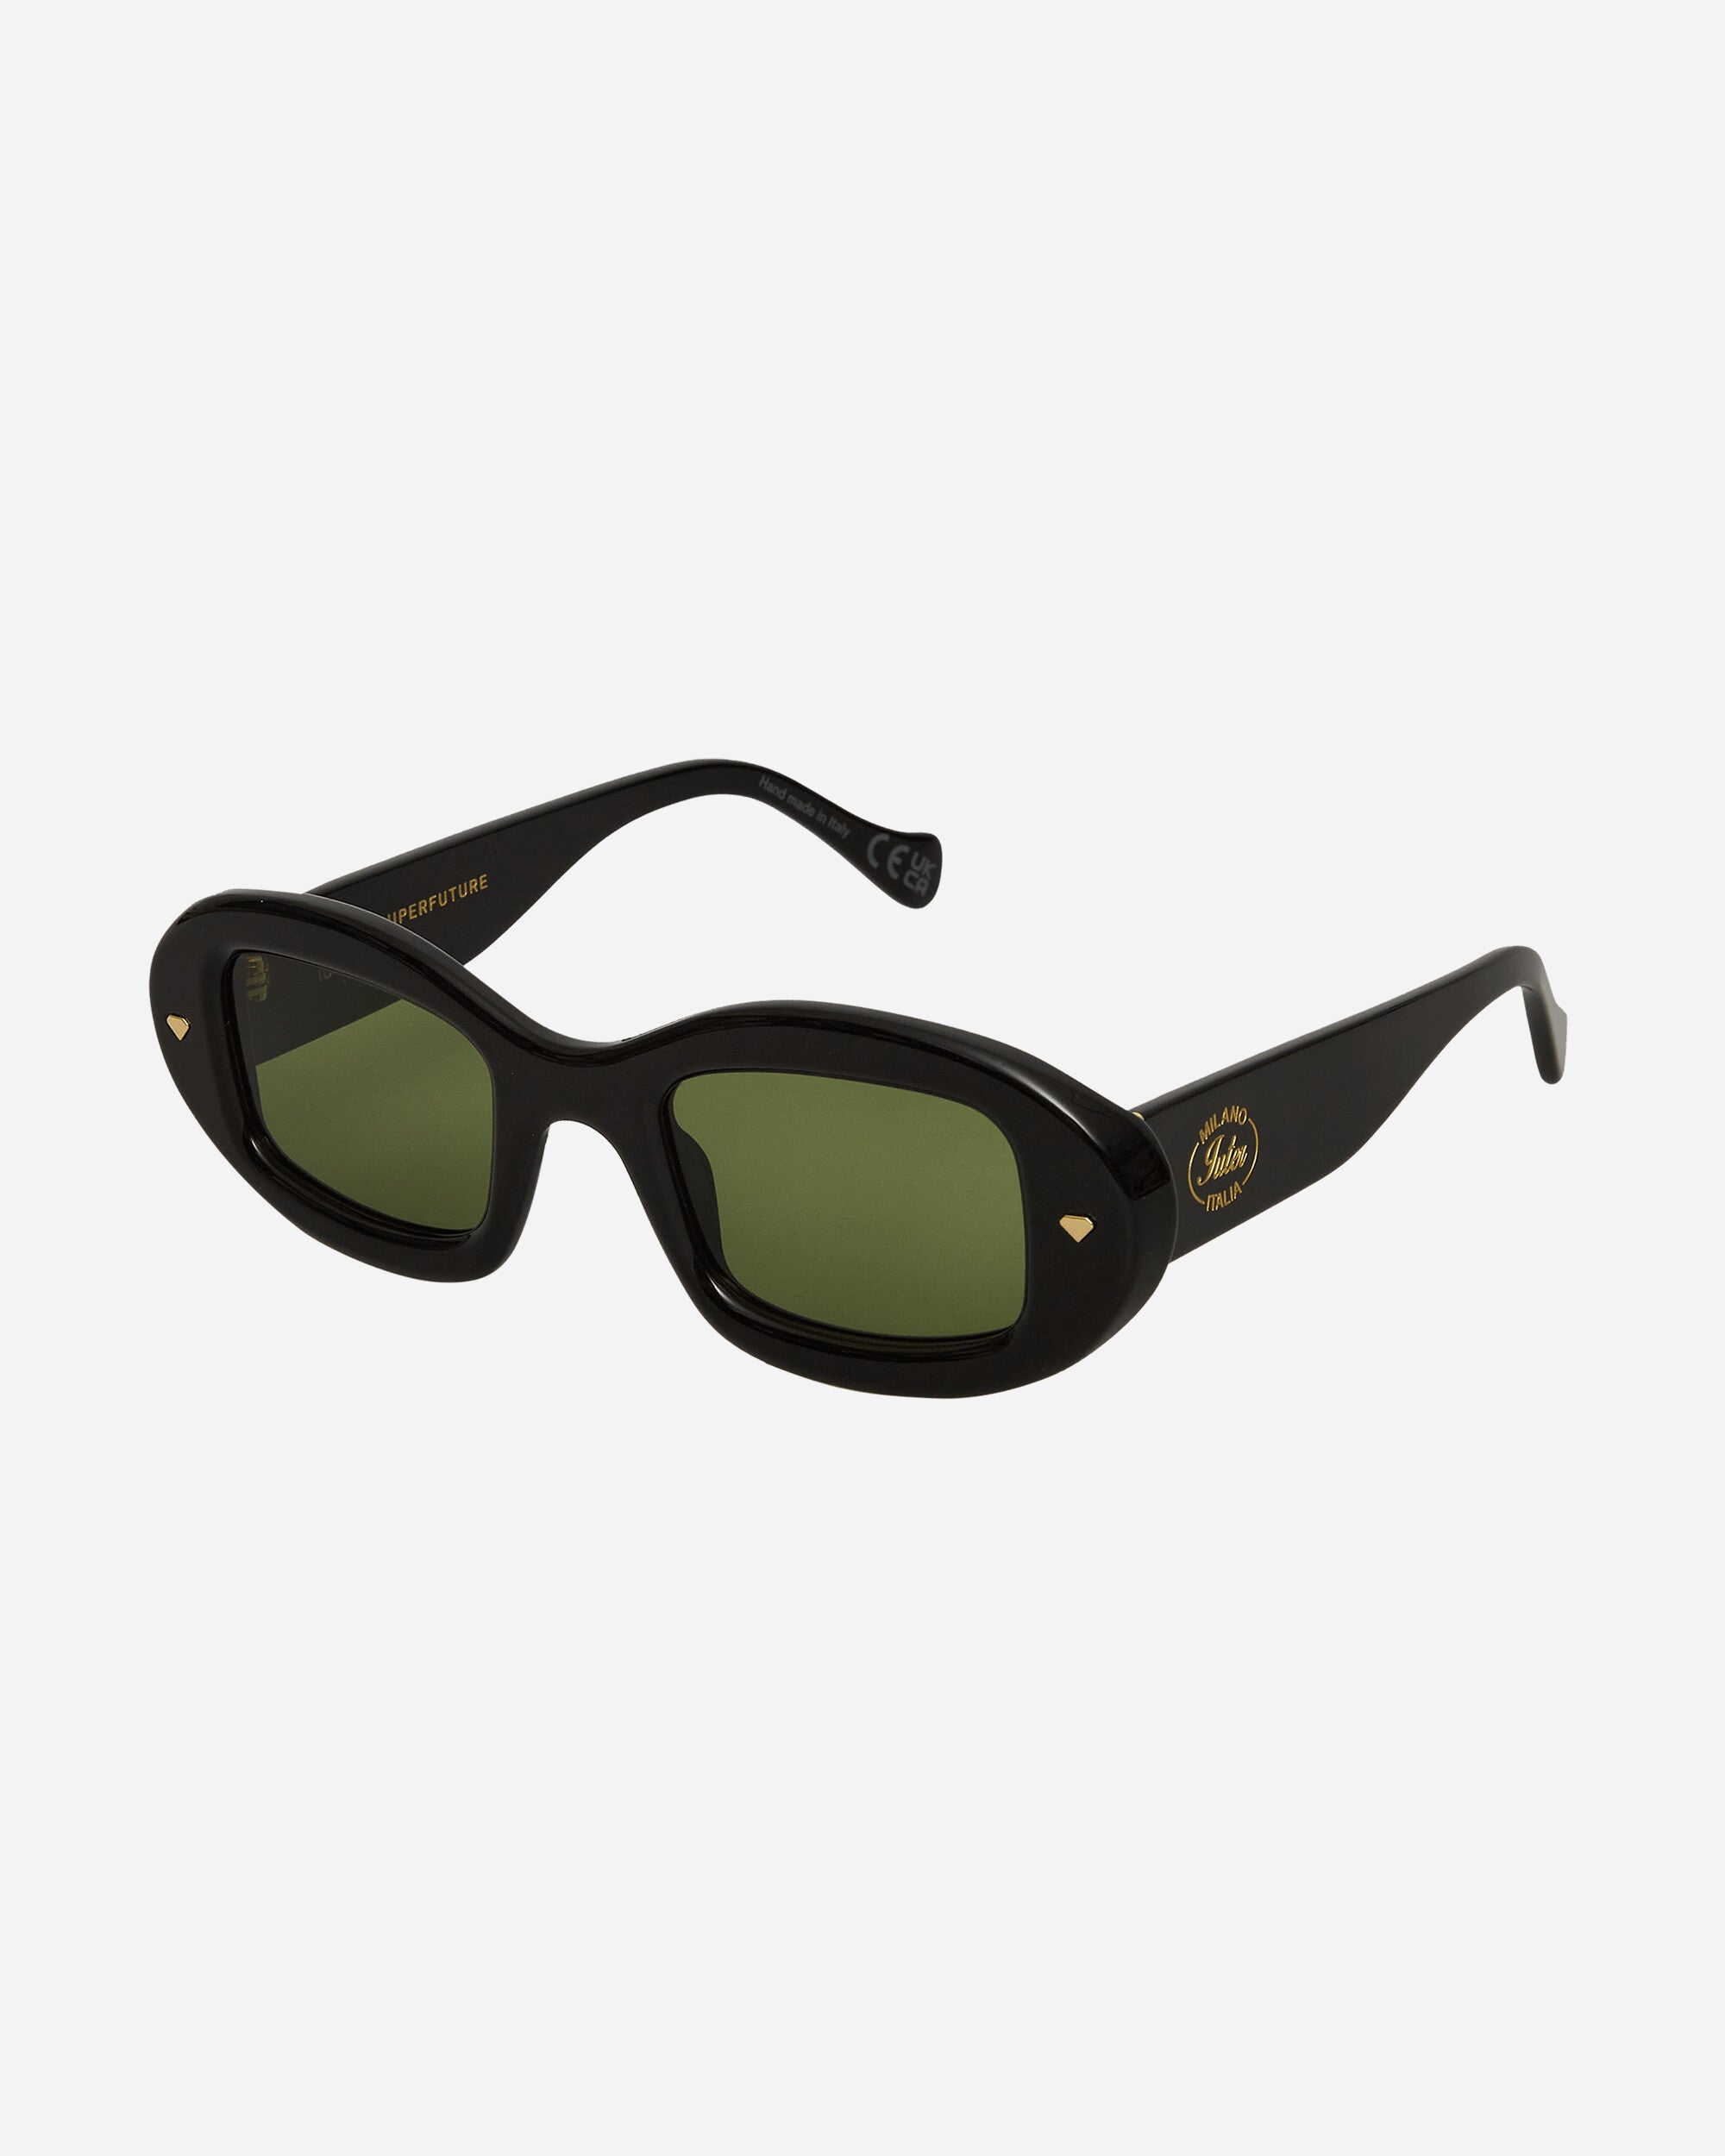 Iuter Iuter X Resrosuperfuture Tutto Black Eyewear Sunglasses IUTERSUPER BLACK